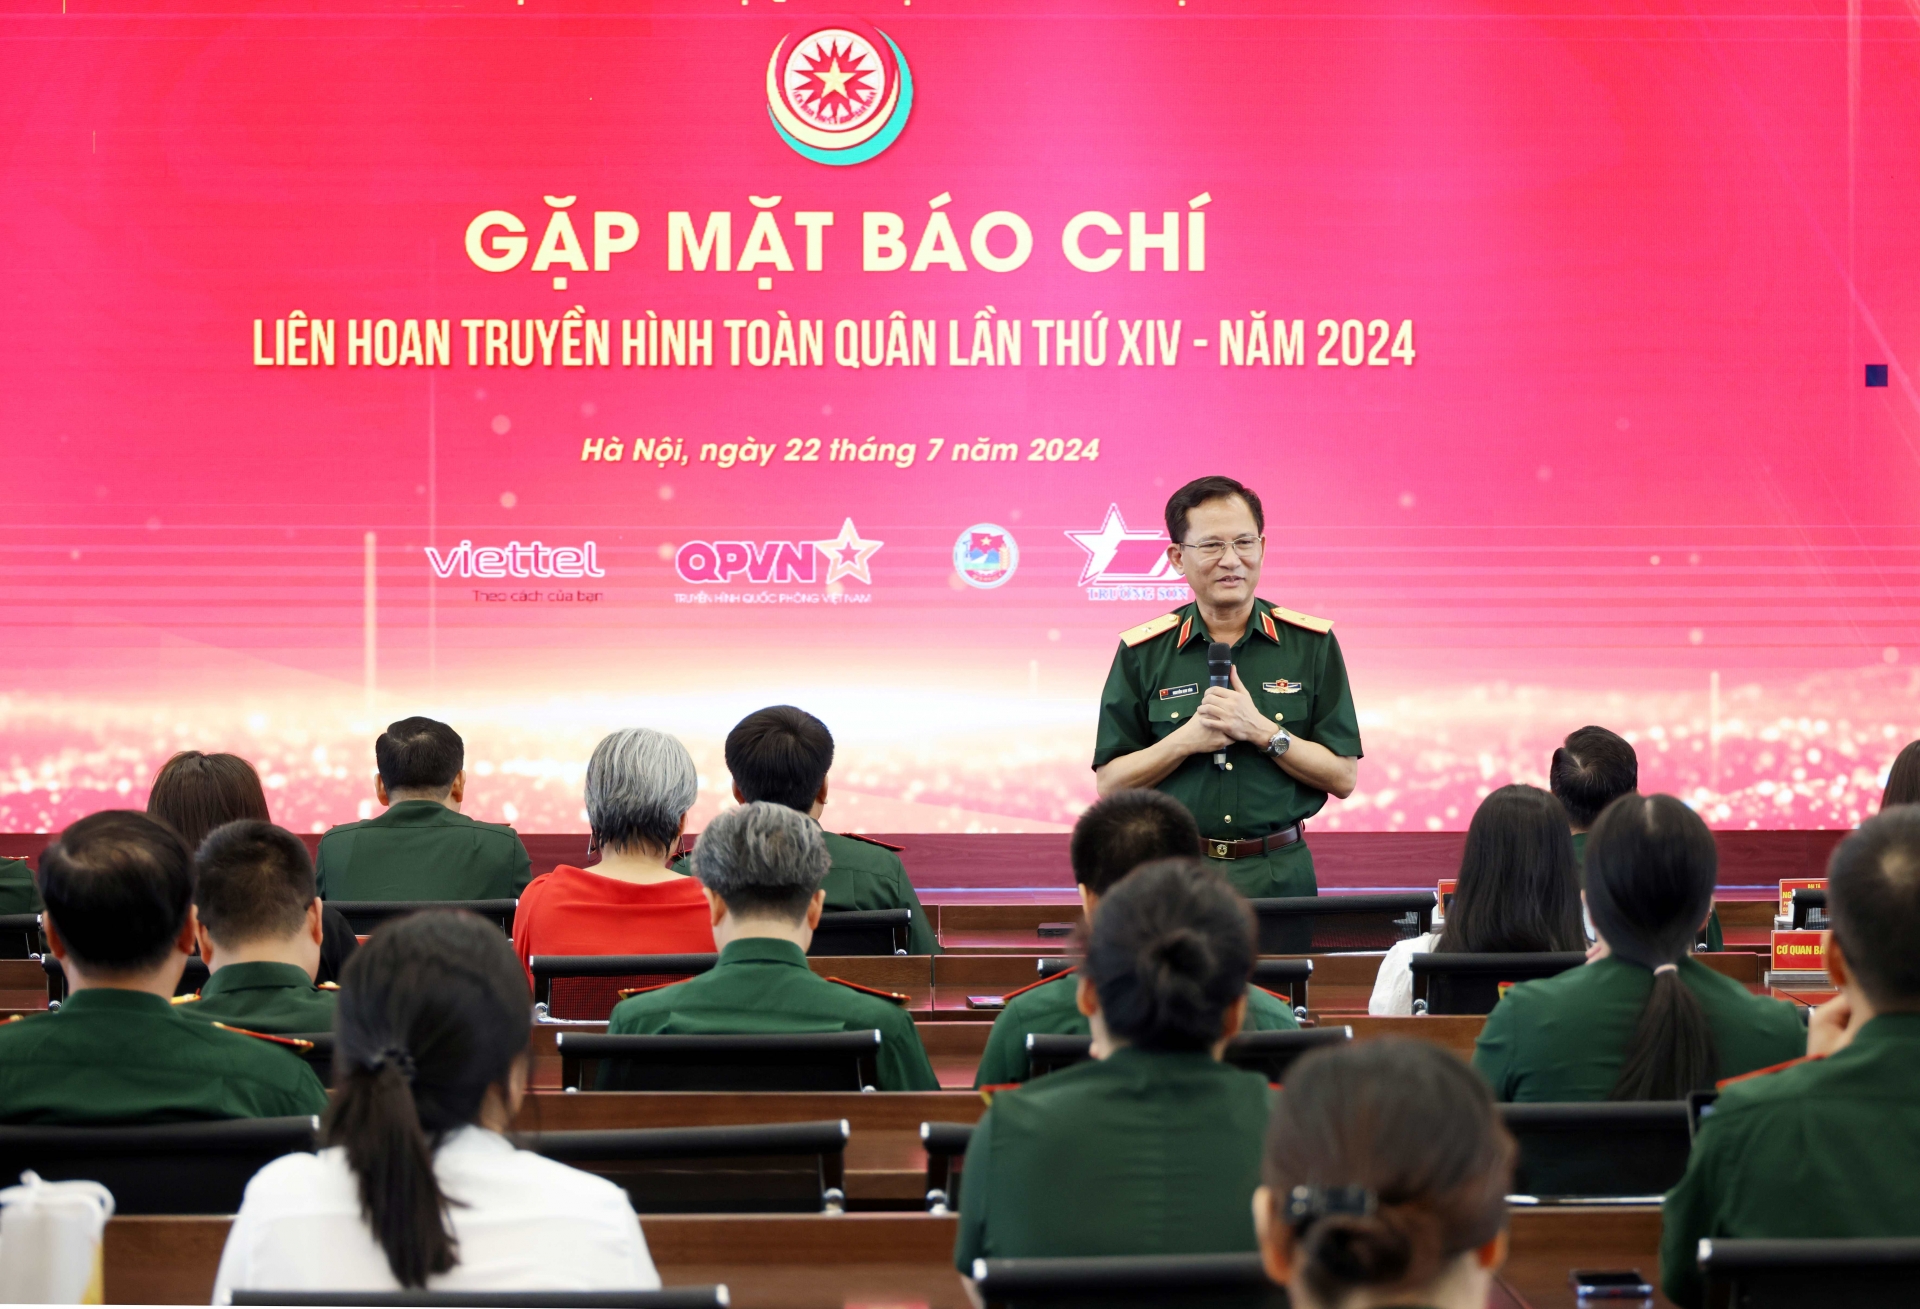 Thiếu tướng Nguyễn Kim Tôn, Giám đốc Trung tâm Phát thanh-Truyền hình Quân đội-Trưởng ban Tổ chức Liên hoan truyền hình toàn quân lần thứ 14  chủ trì buổi gặp mặt.  